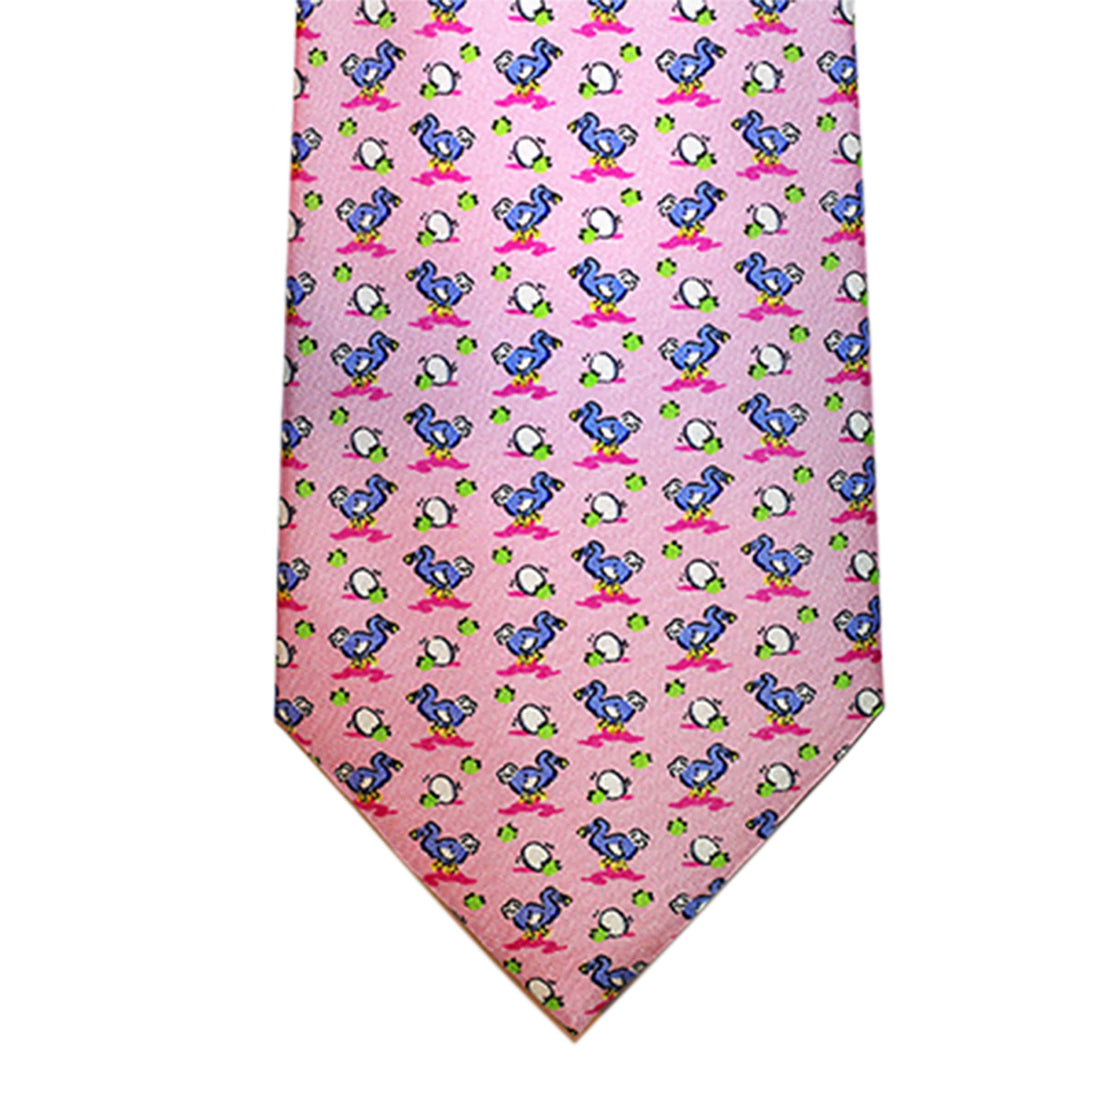 Pink & blue ducks printed silk tie